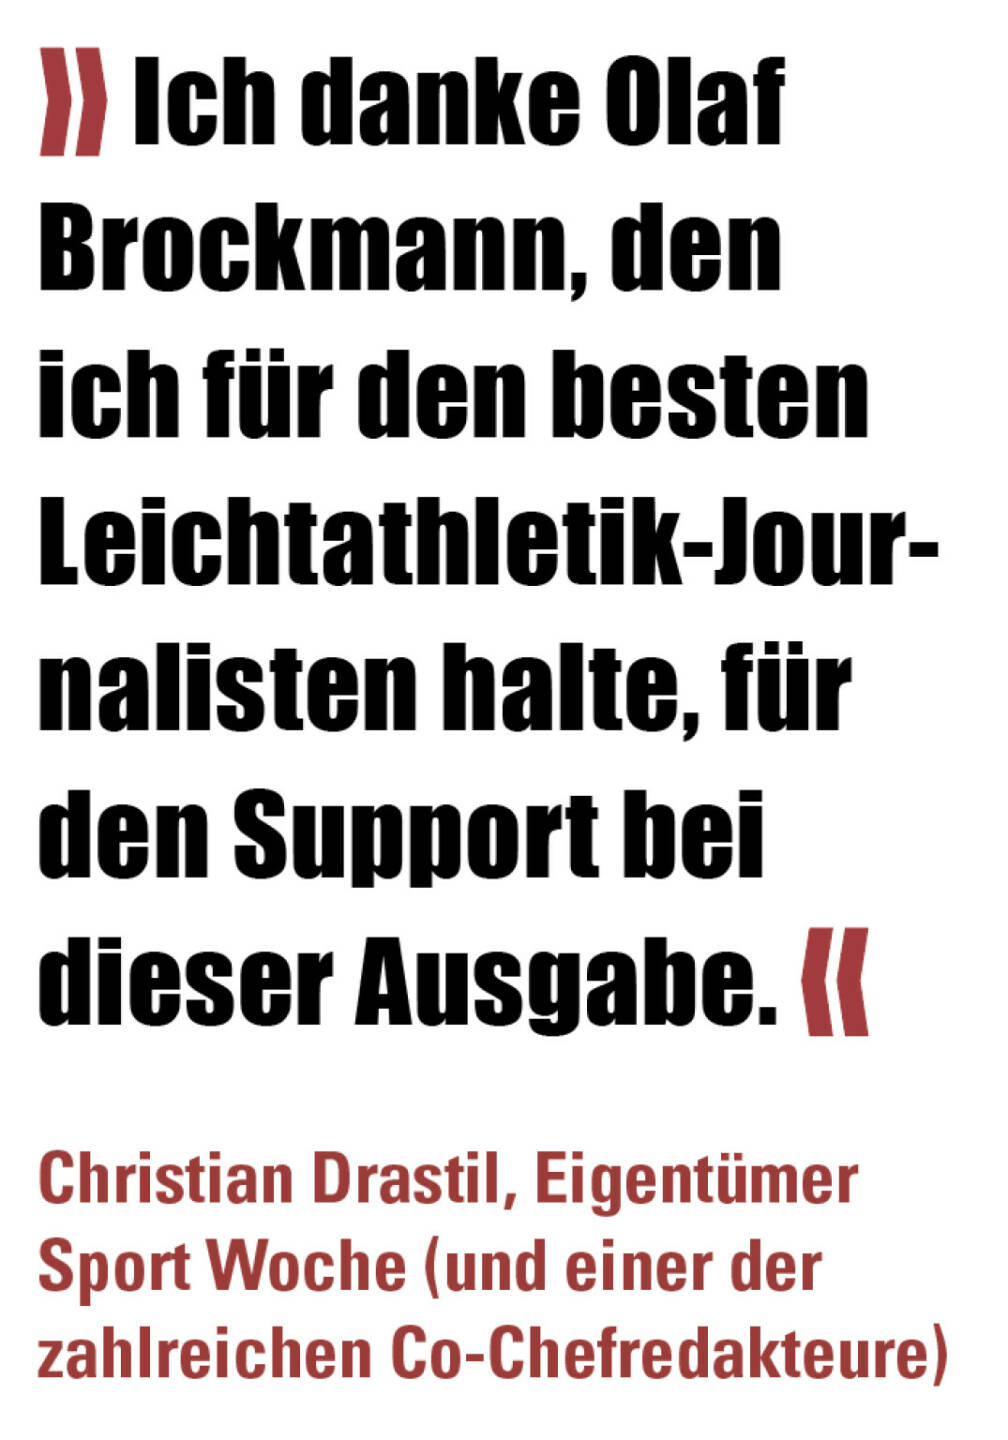 » Ich danke Olaf Brockmann, den ich für den besten Leichtathletik-Journalisten halte, für den Support bei dieser Ausgabe. «
Christian Drastil, Eigentümer Sport Woche (und einer der zahlreichen Co-Chefredakteure) 